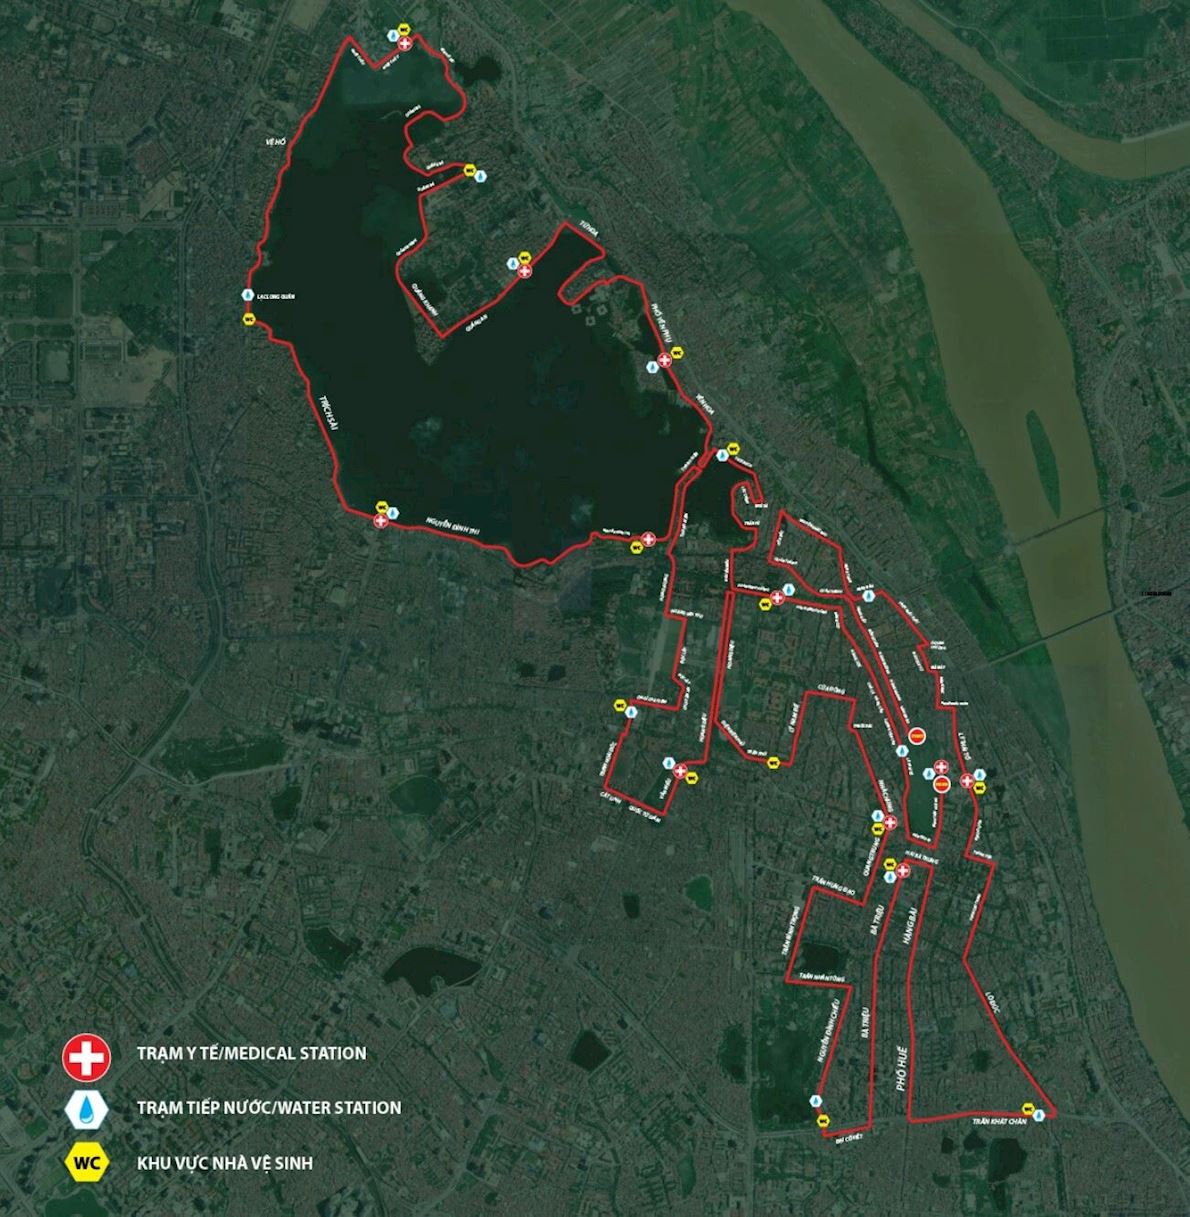 VPBANK Hanoi Marathon  MAPA DEL RECORRIDO DE